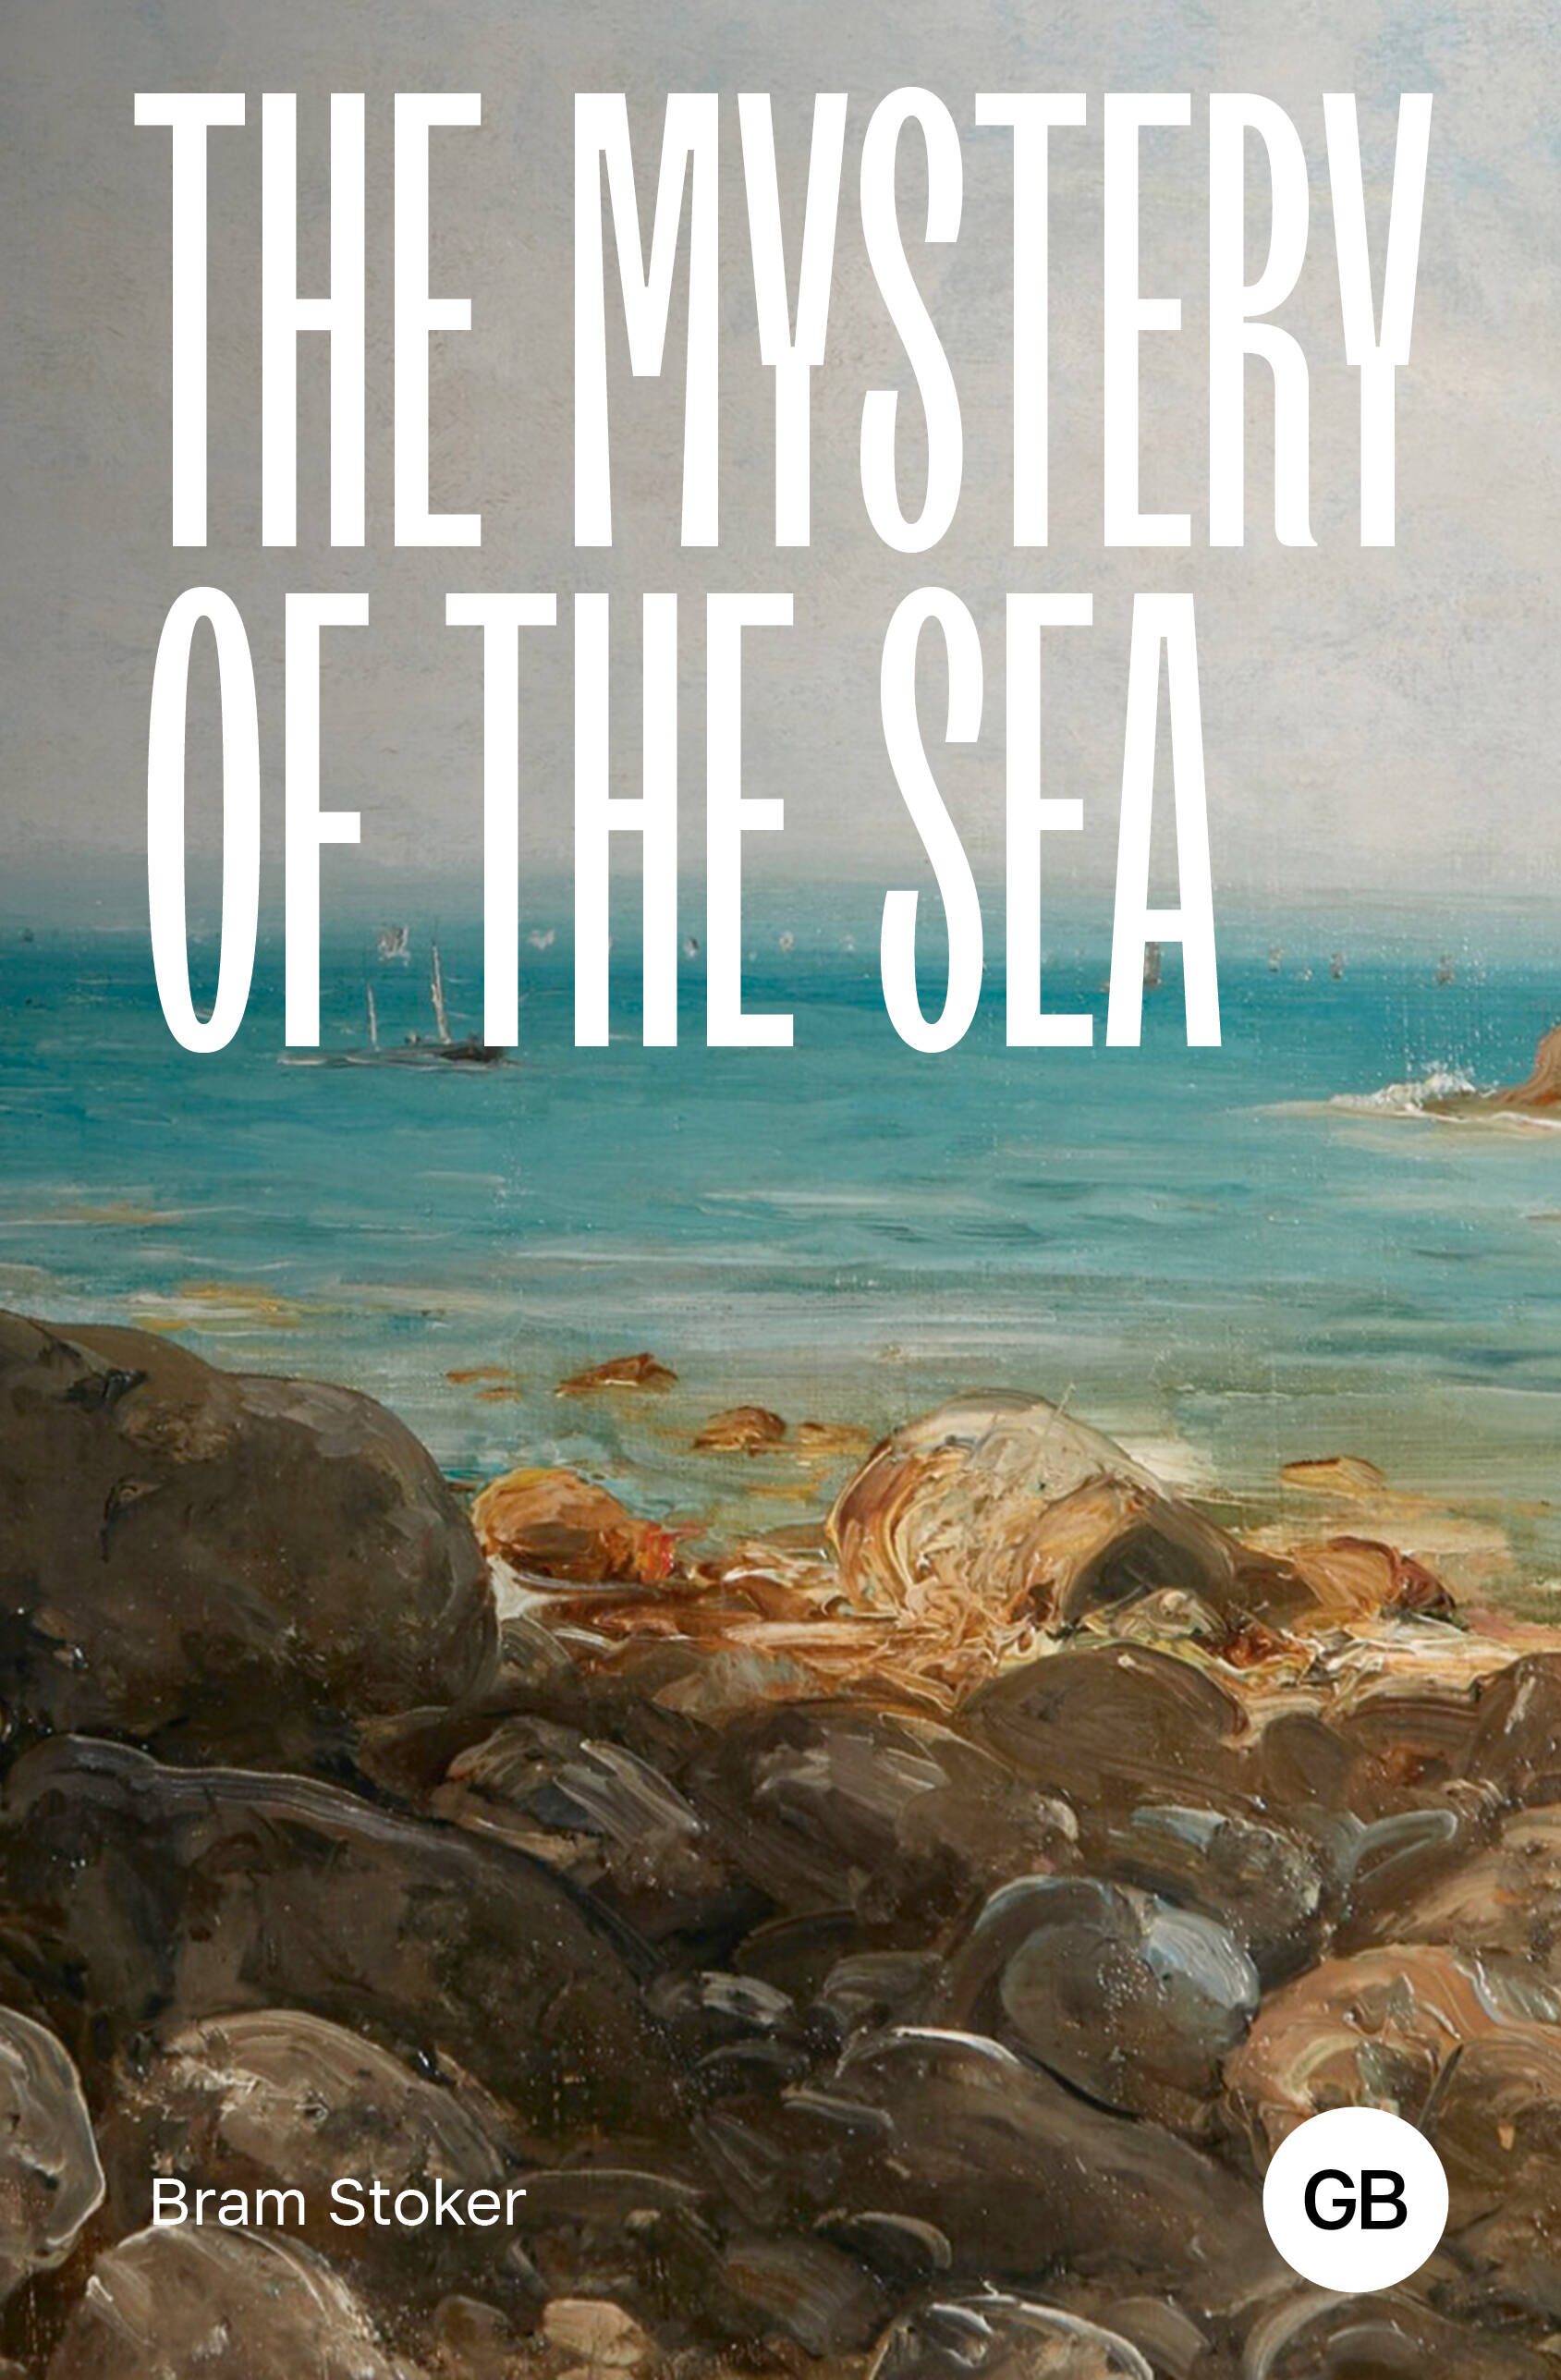 стокер брэм the mystery of the sea тайна моря на англ яз Стокер Брэм The Mystery of the Sea